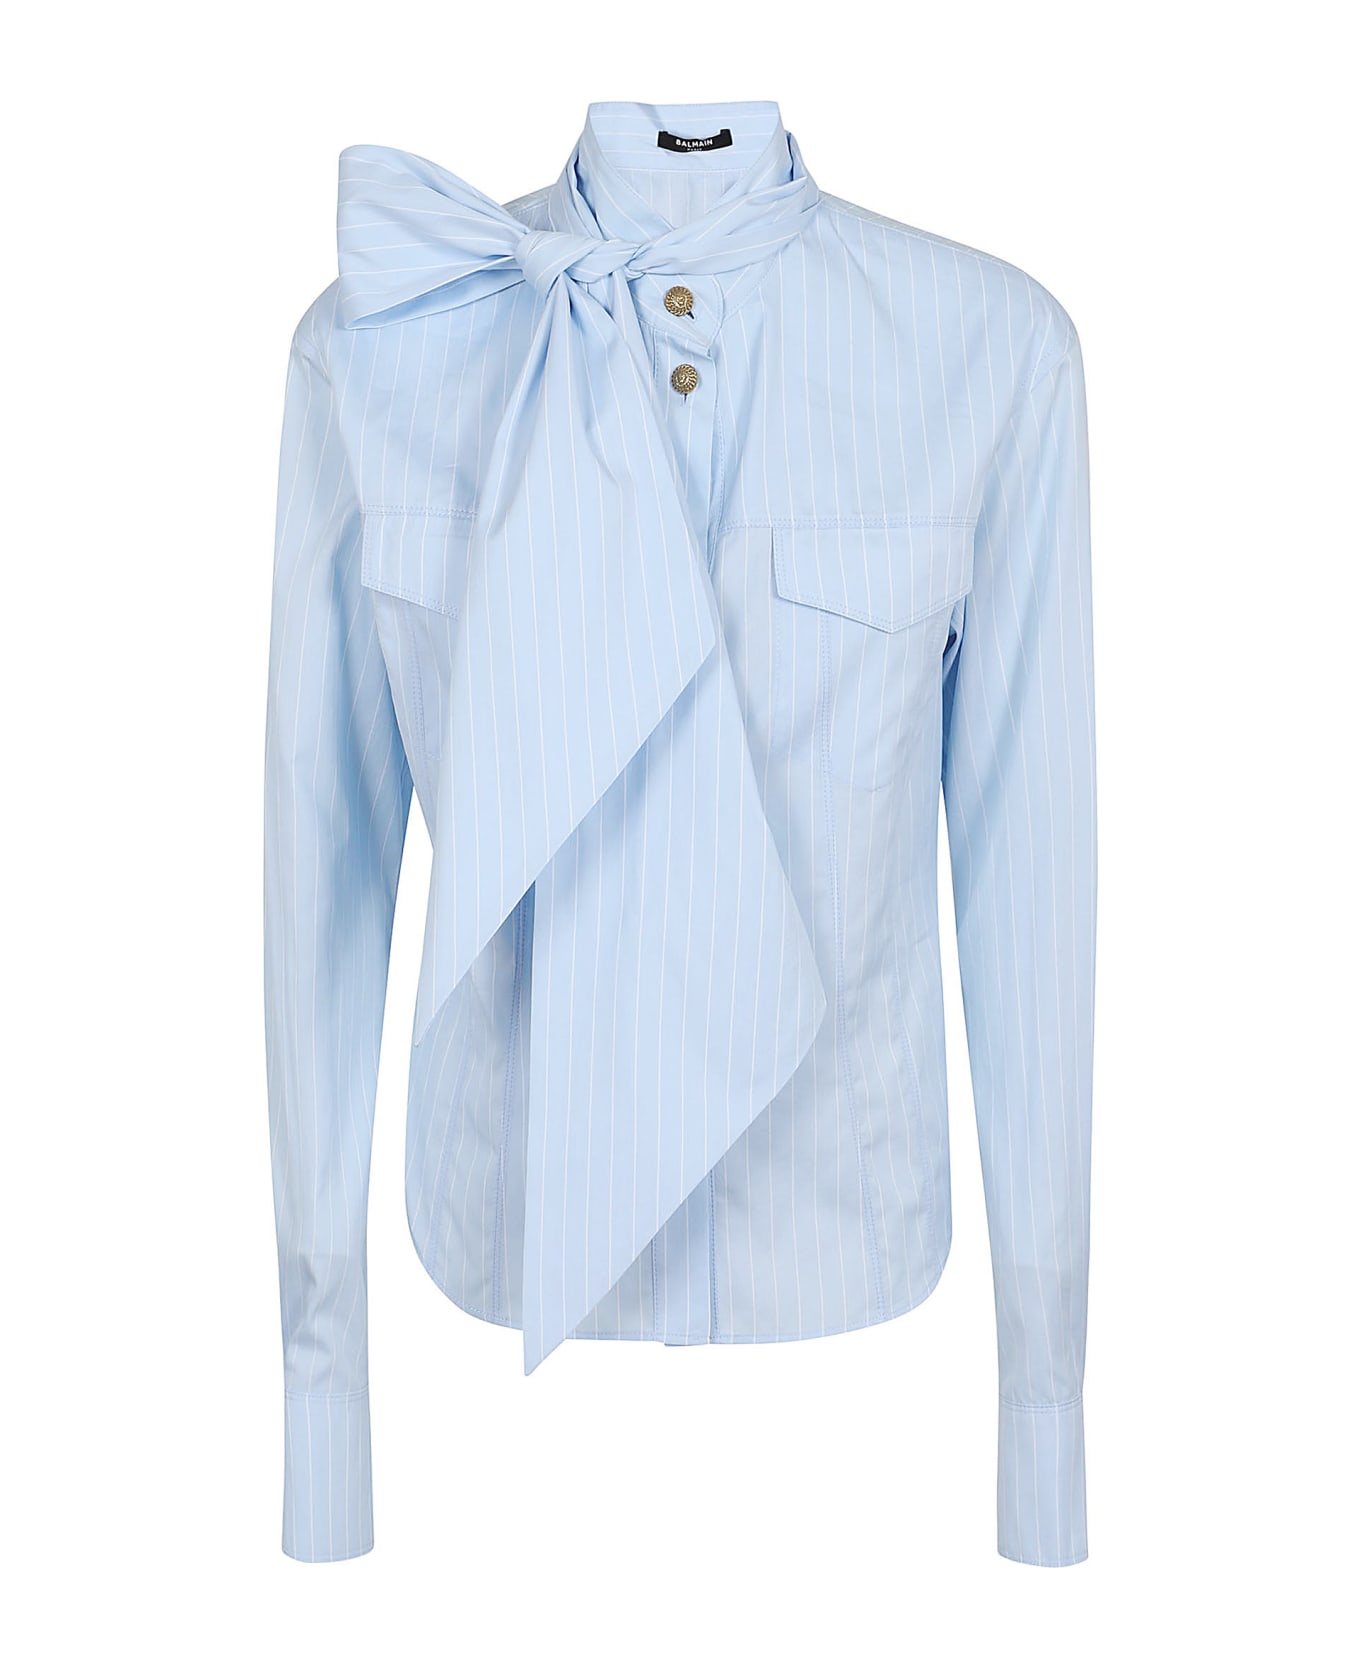 Balmain Pussy Bow Striped Cotton Popeline Shirt - Slj Bleu Pale Blanc シャツ